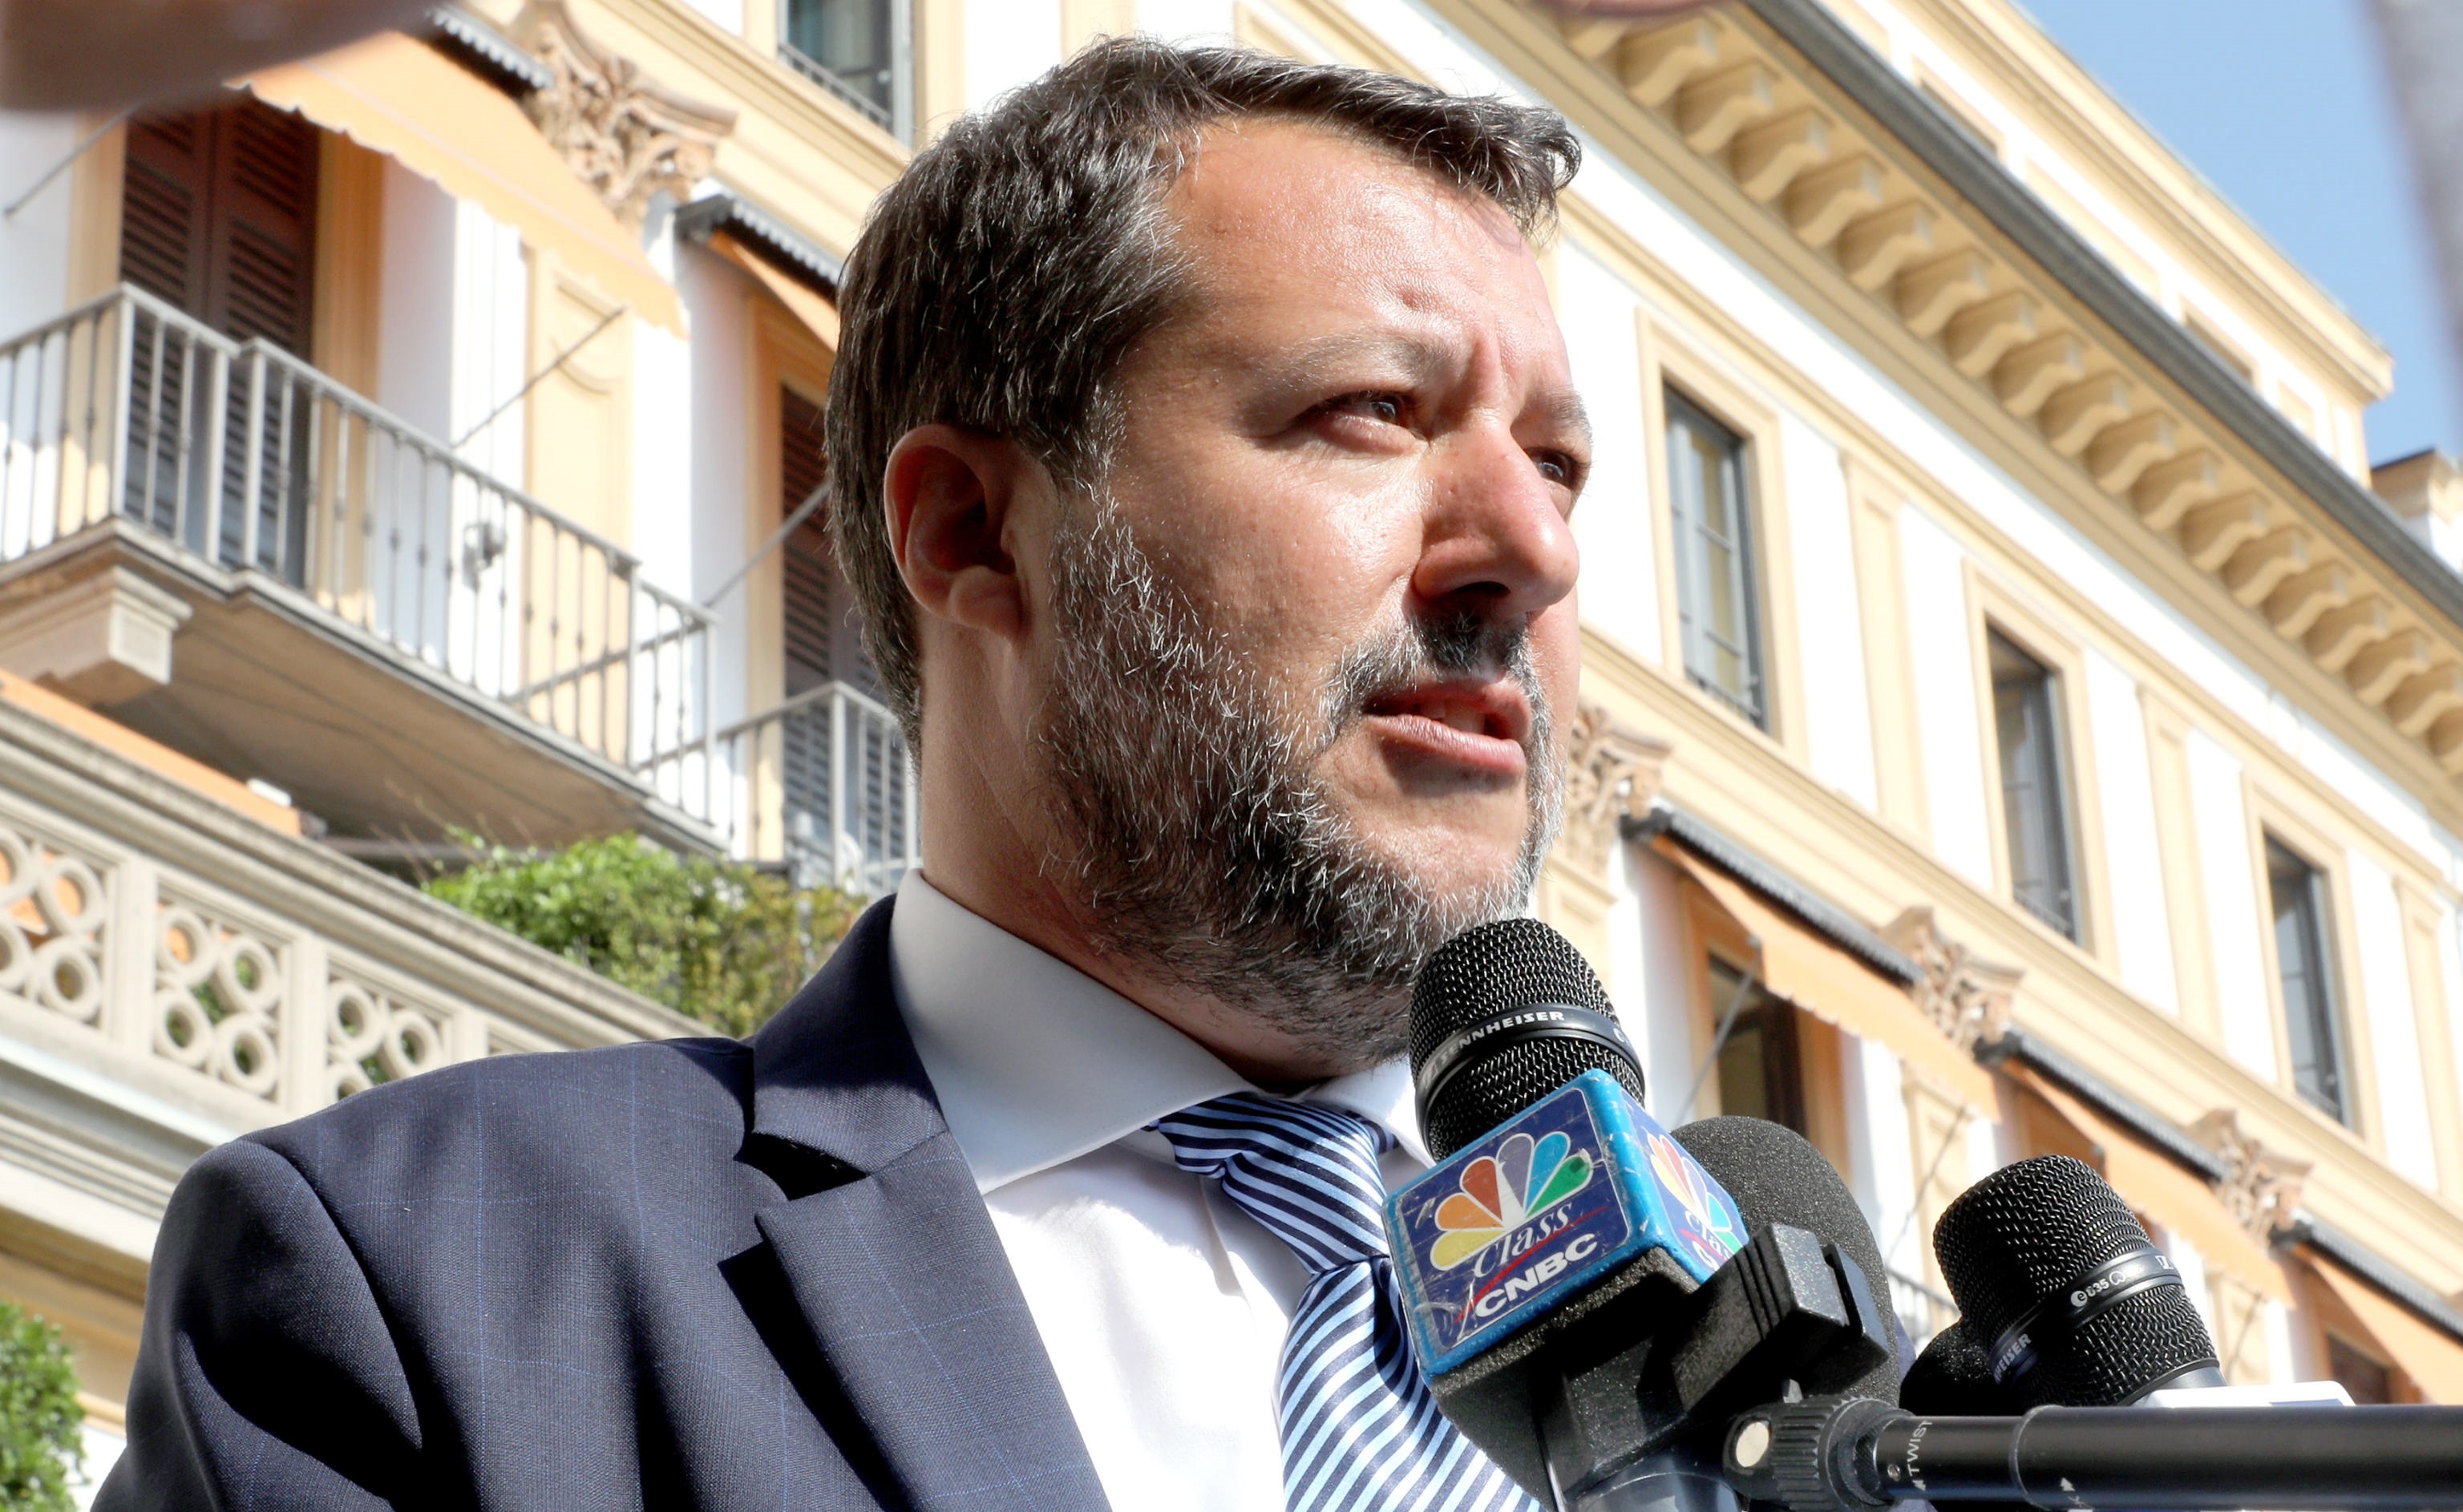 Científicos critican a Salvini por decir que variantes son reacción a vacuna